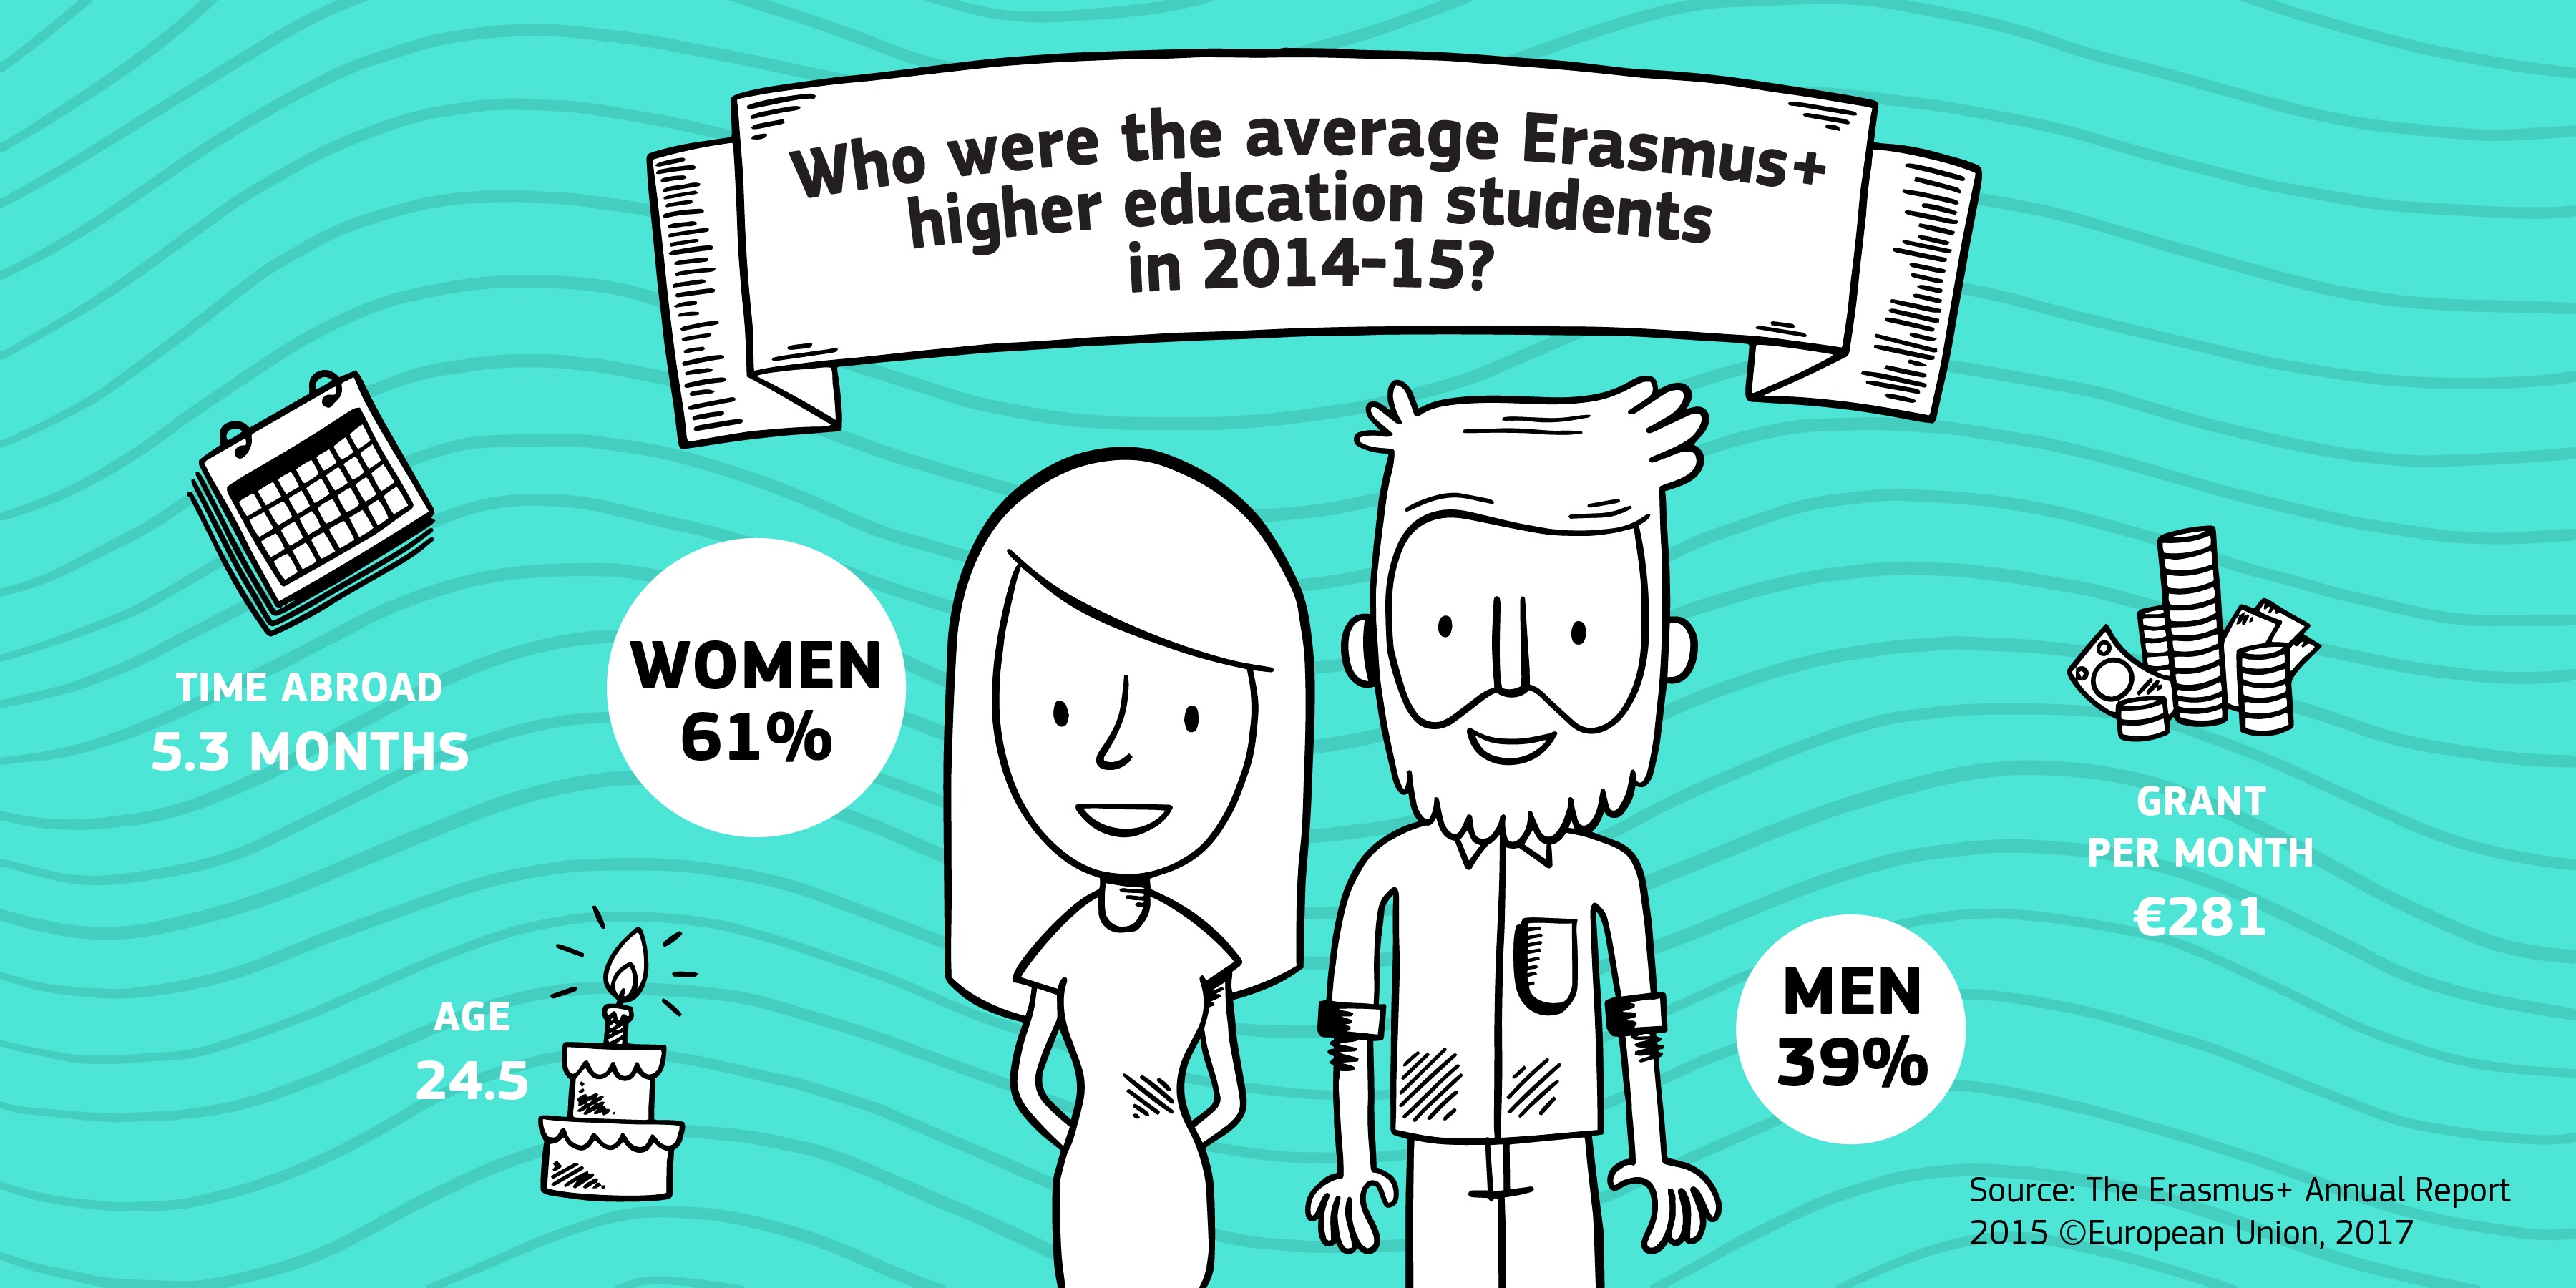 Illustration, erasmus en chiffres. Les étudiants partis en échange erasmus en 2014-2015 étaient en moyenne 61% de femmes et 39% d'hommes, avaient 24.5 ans, et ont passé 5.3 mois à l'étranger.